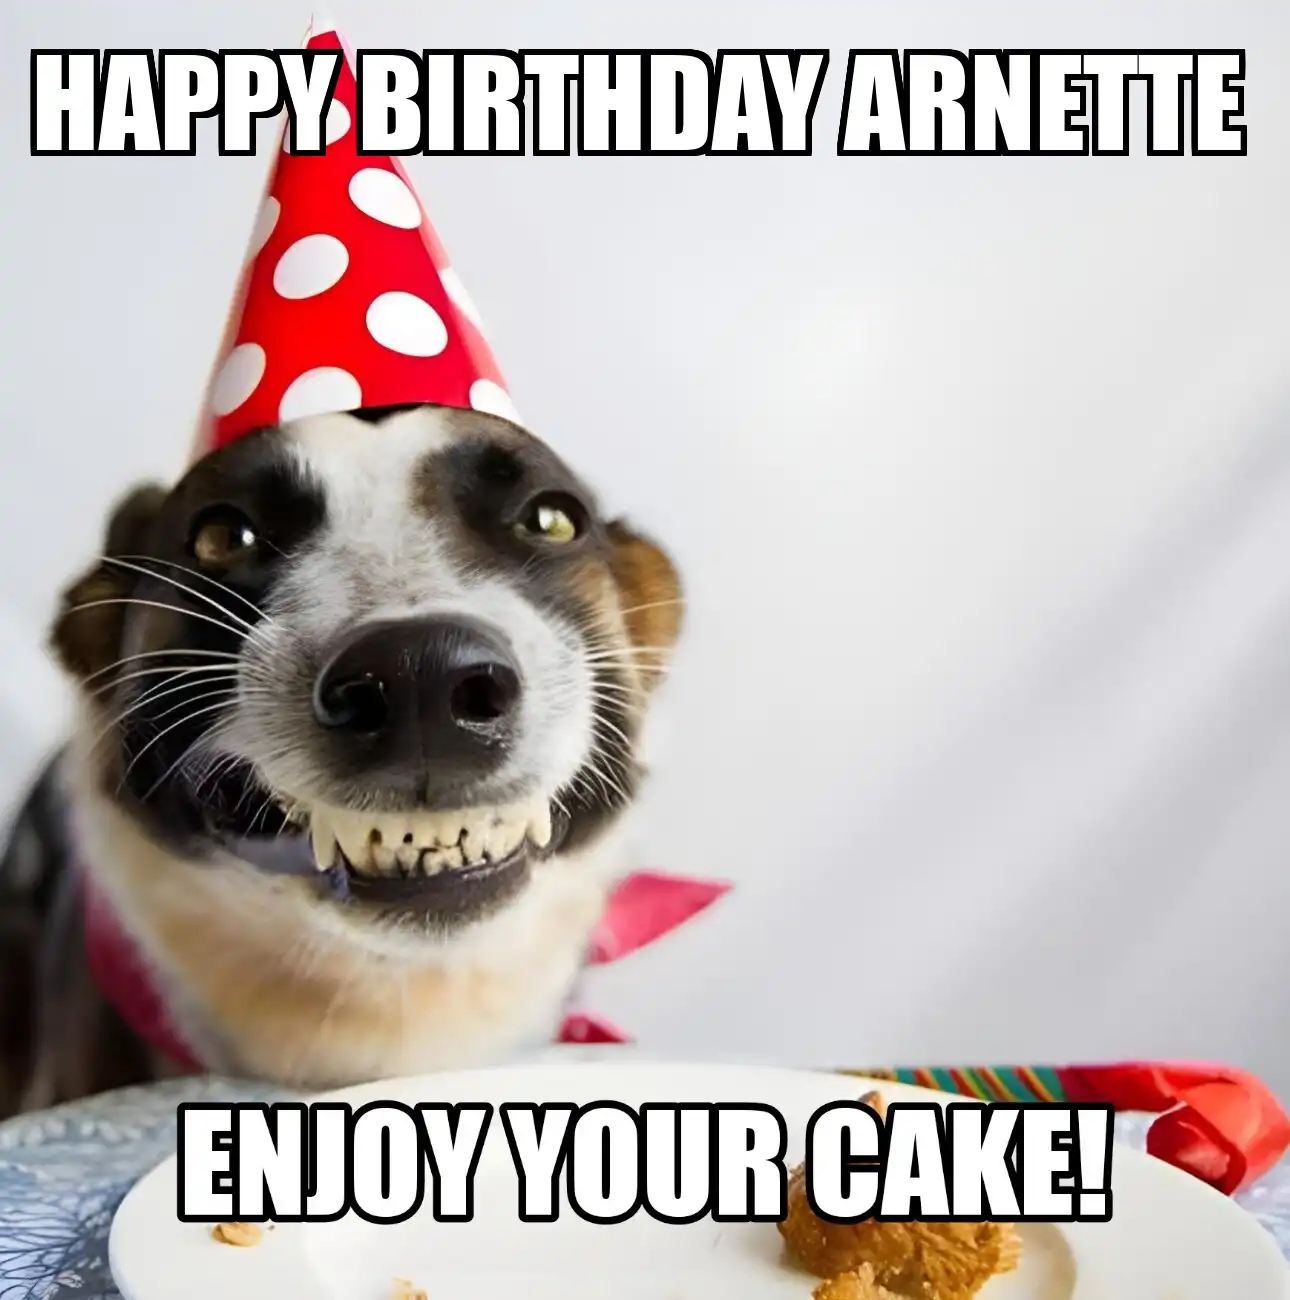 Happy Birthday Arnette Enjoy Your Cake Dog Meme